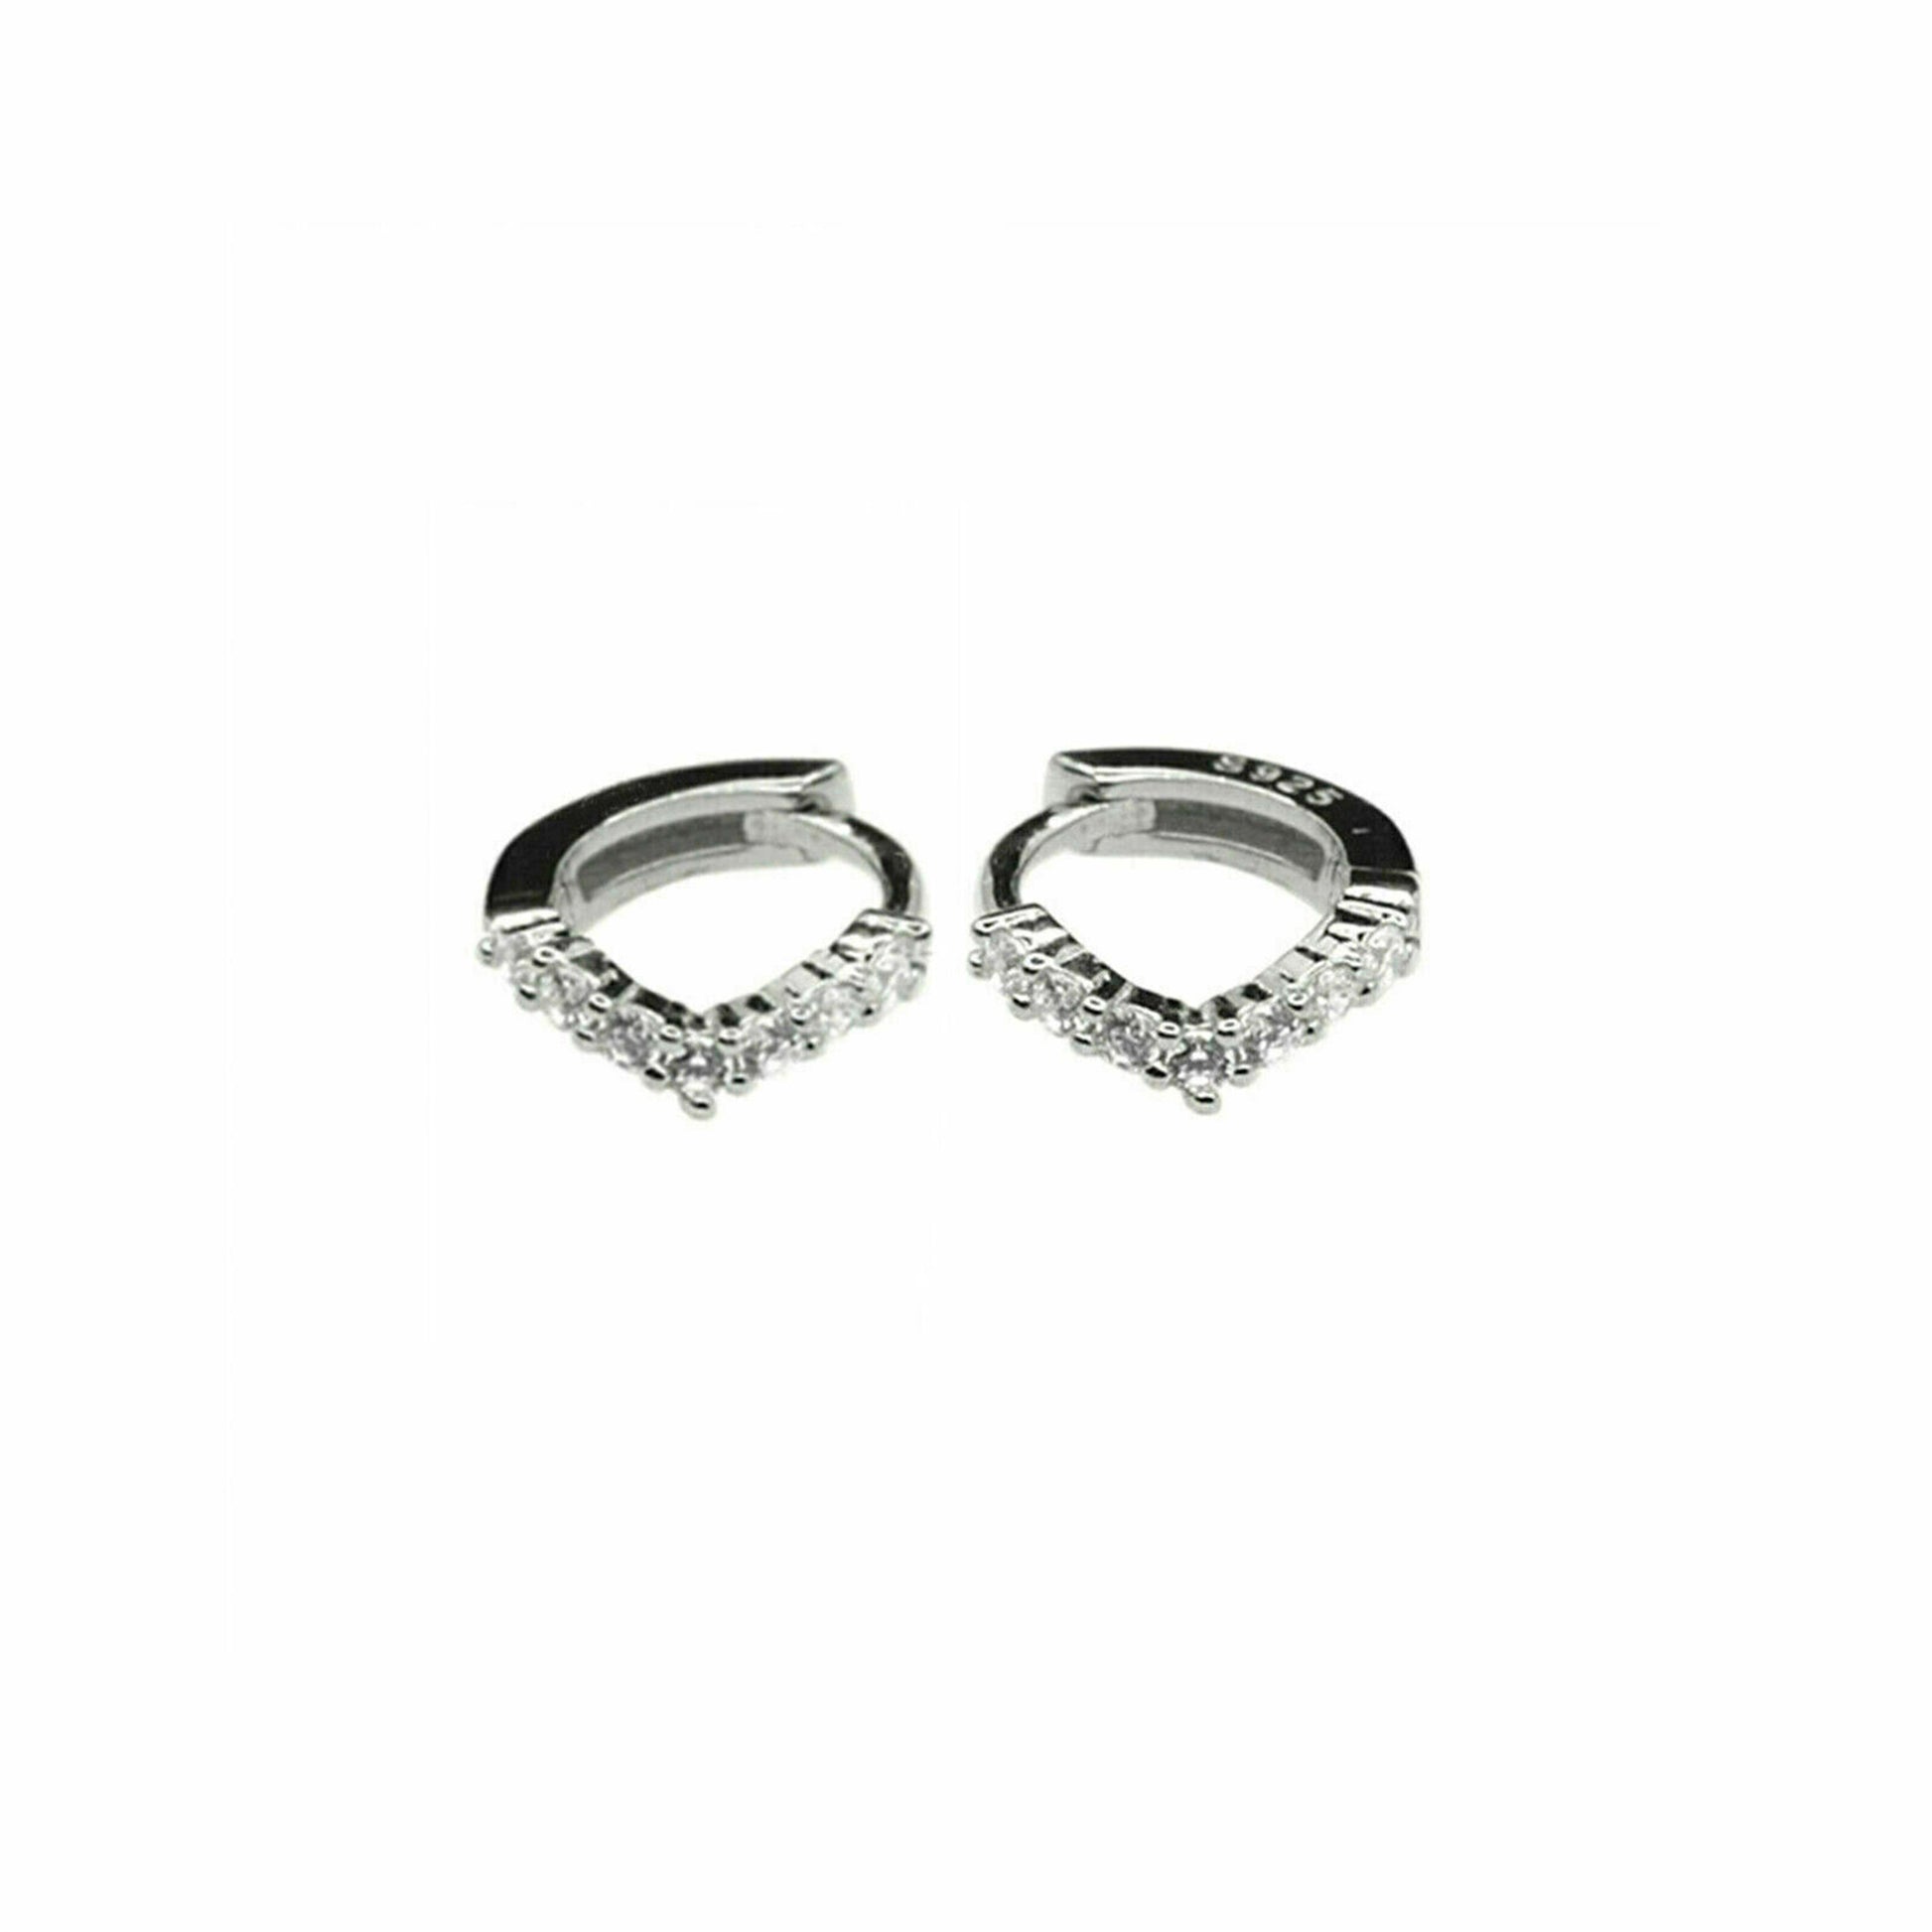 6mm-8mm Sterling Silver Wishbone CZ Huggie Lobe Earrings with Plain Bead Edge - sugarkittenlondon